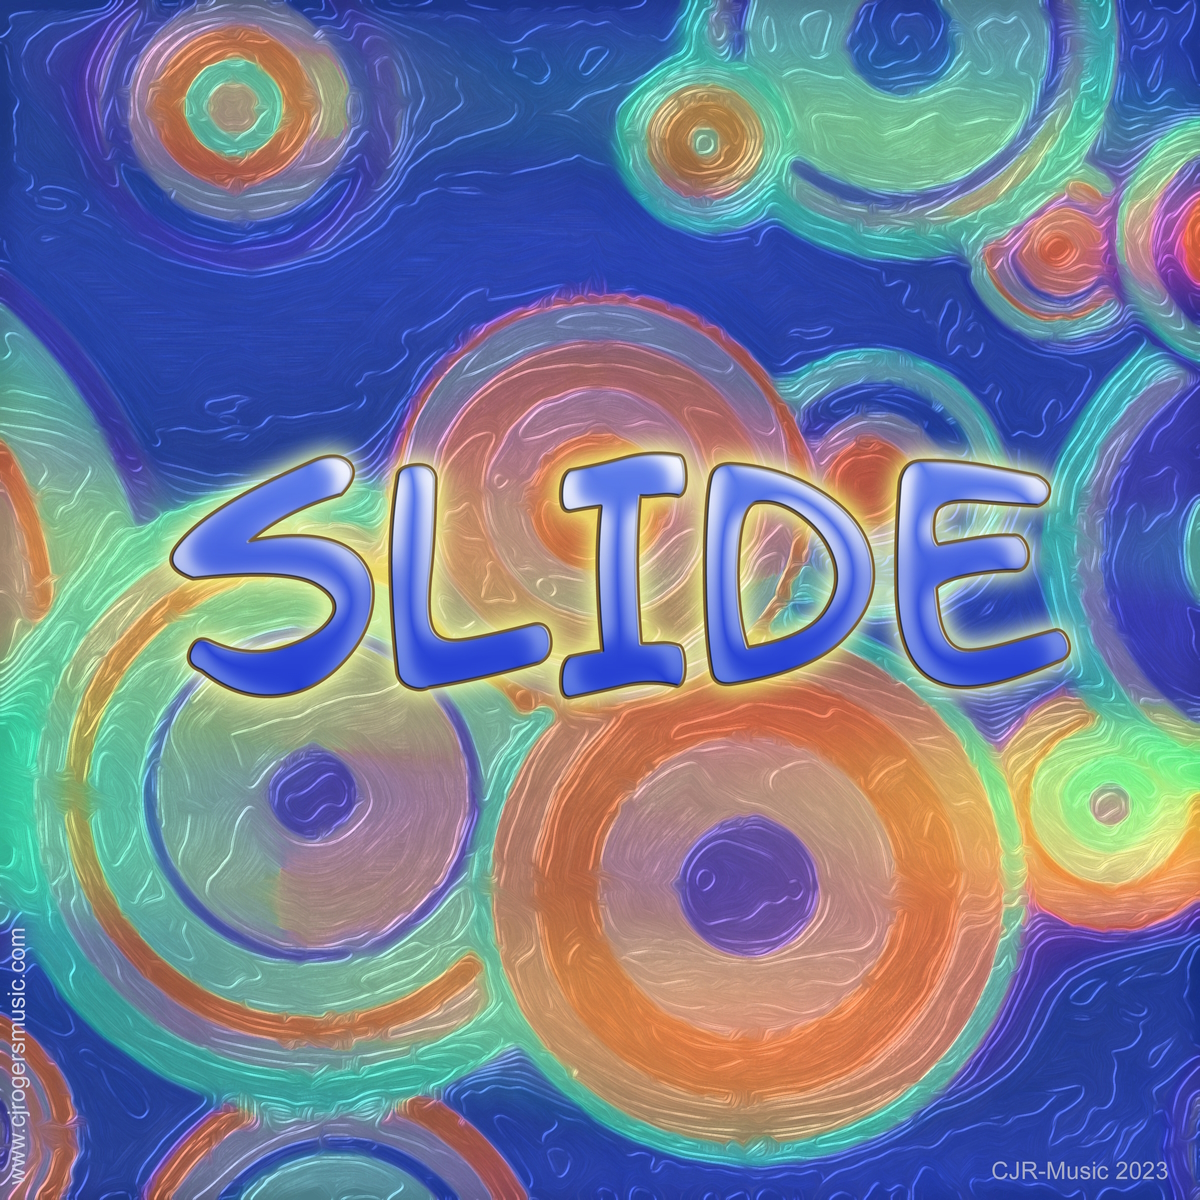 Slide - Fullsize Cover Art